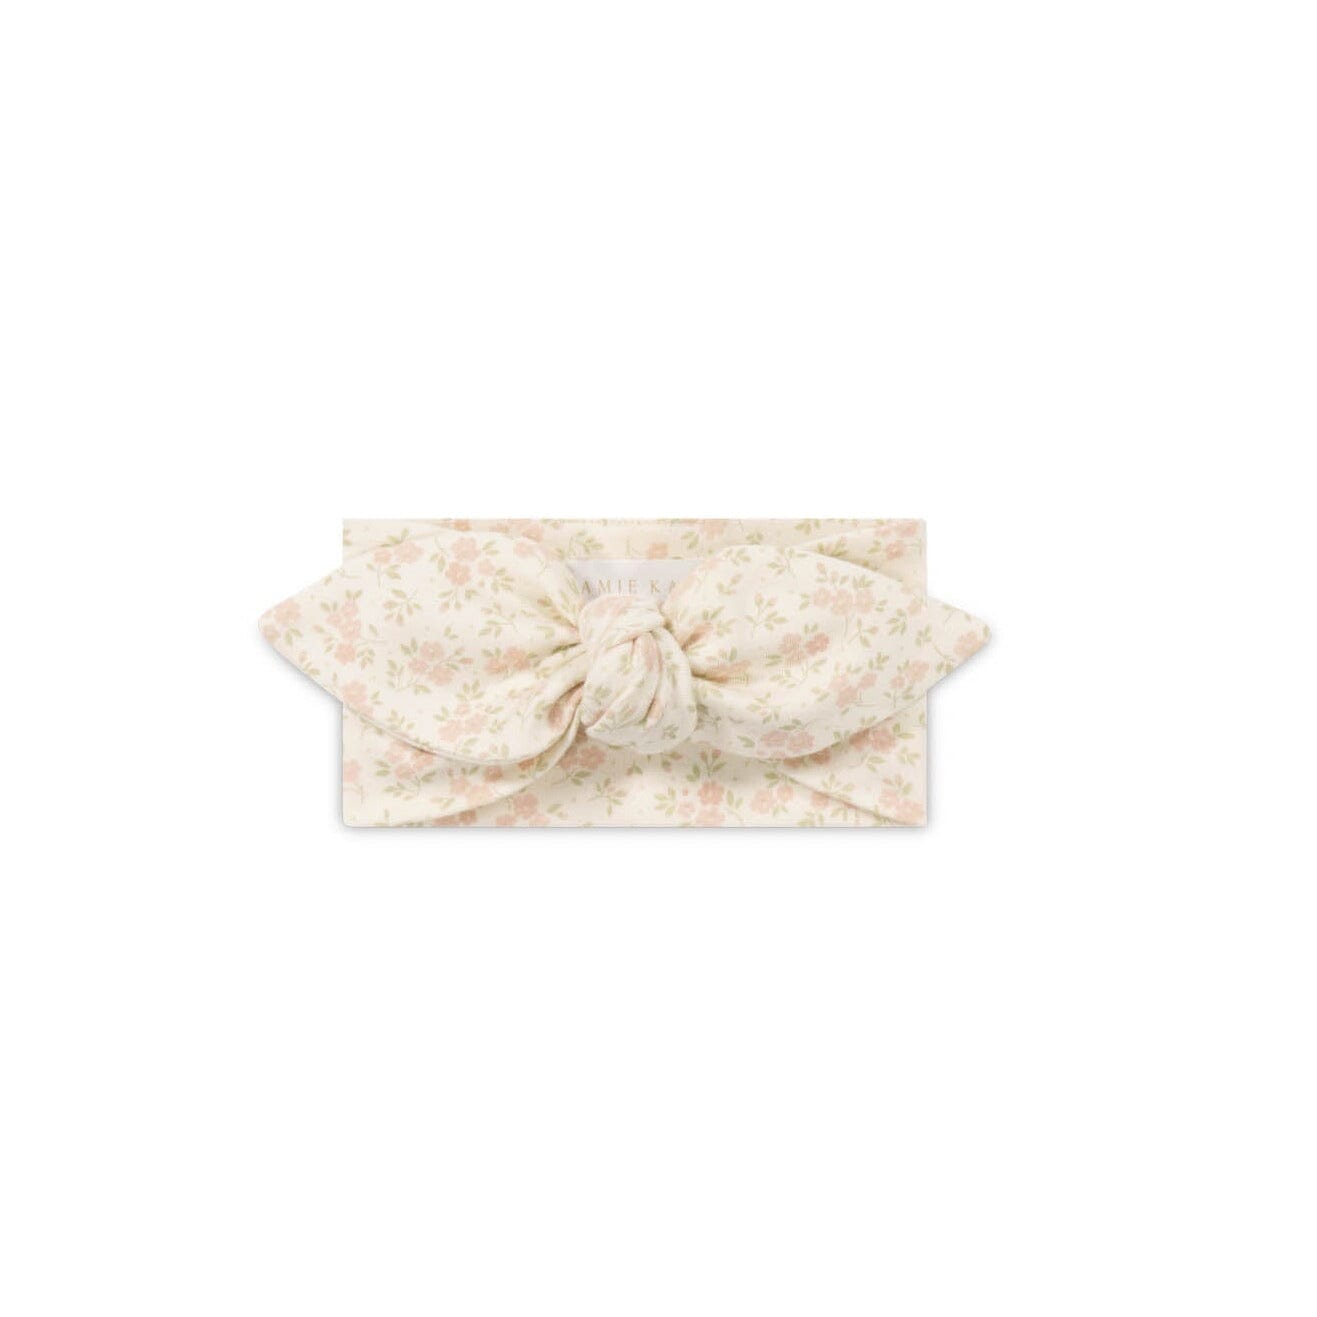 Jamie Kay Organic Cotton Headband - Rosalie Floral Mauve Headband Jamie Kay 